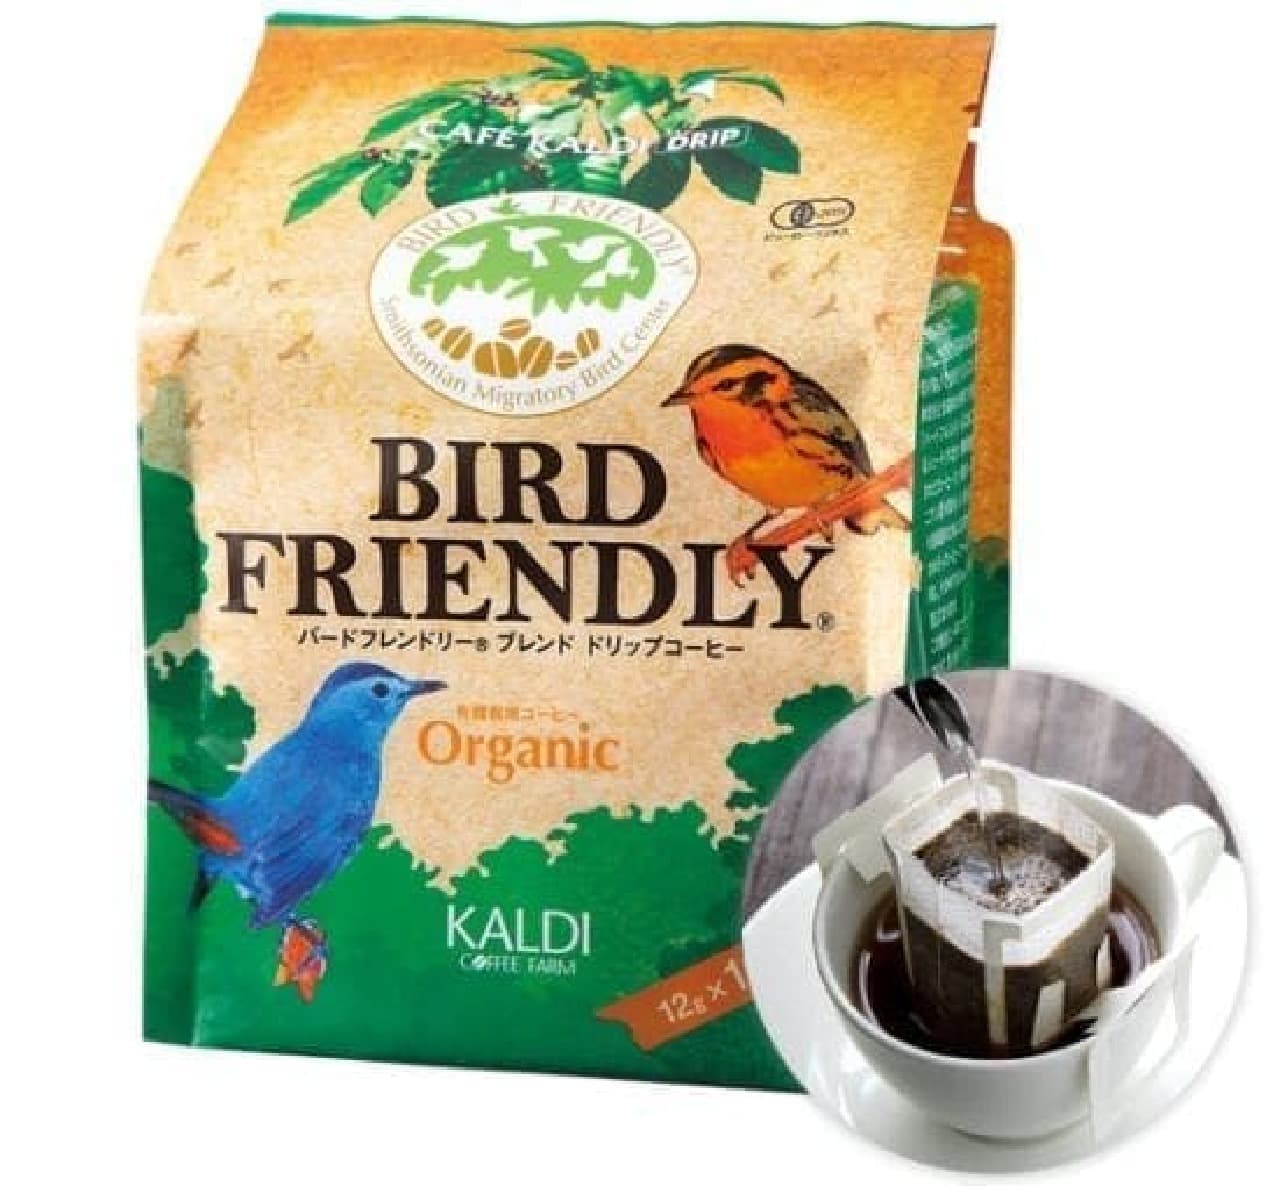 KALDI Coffee Farm "Bird Friendly Coffee Campaign